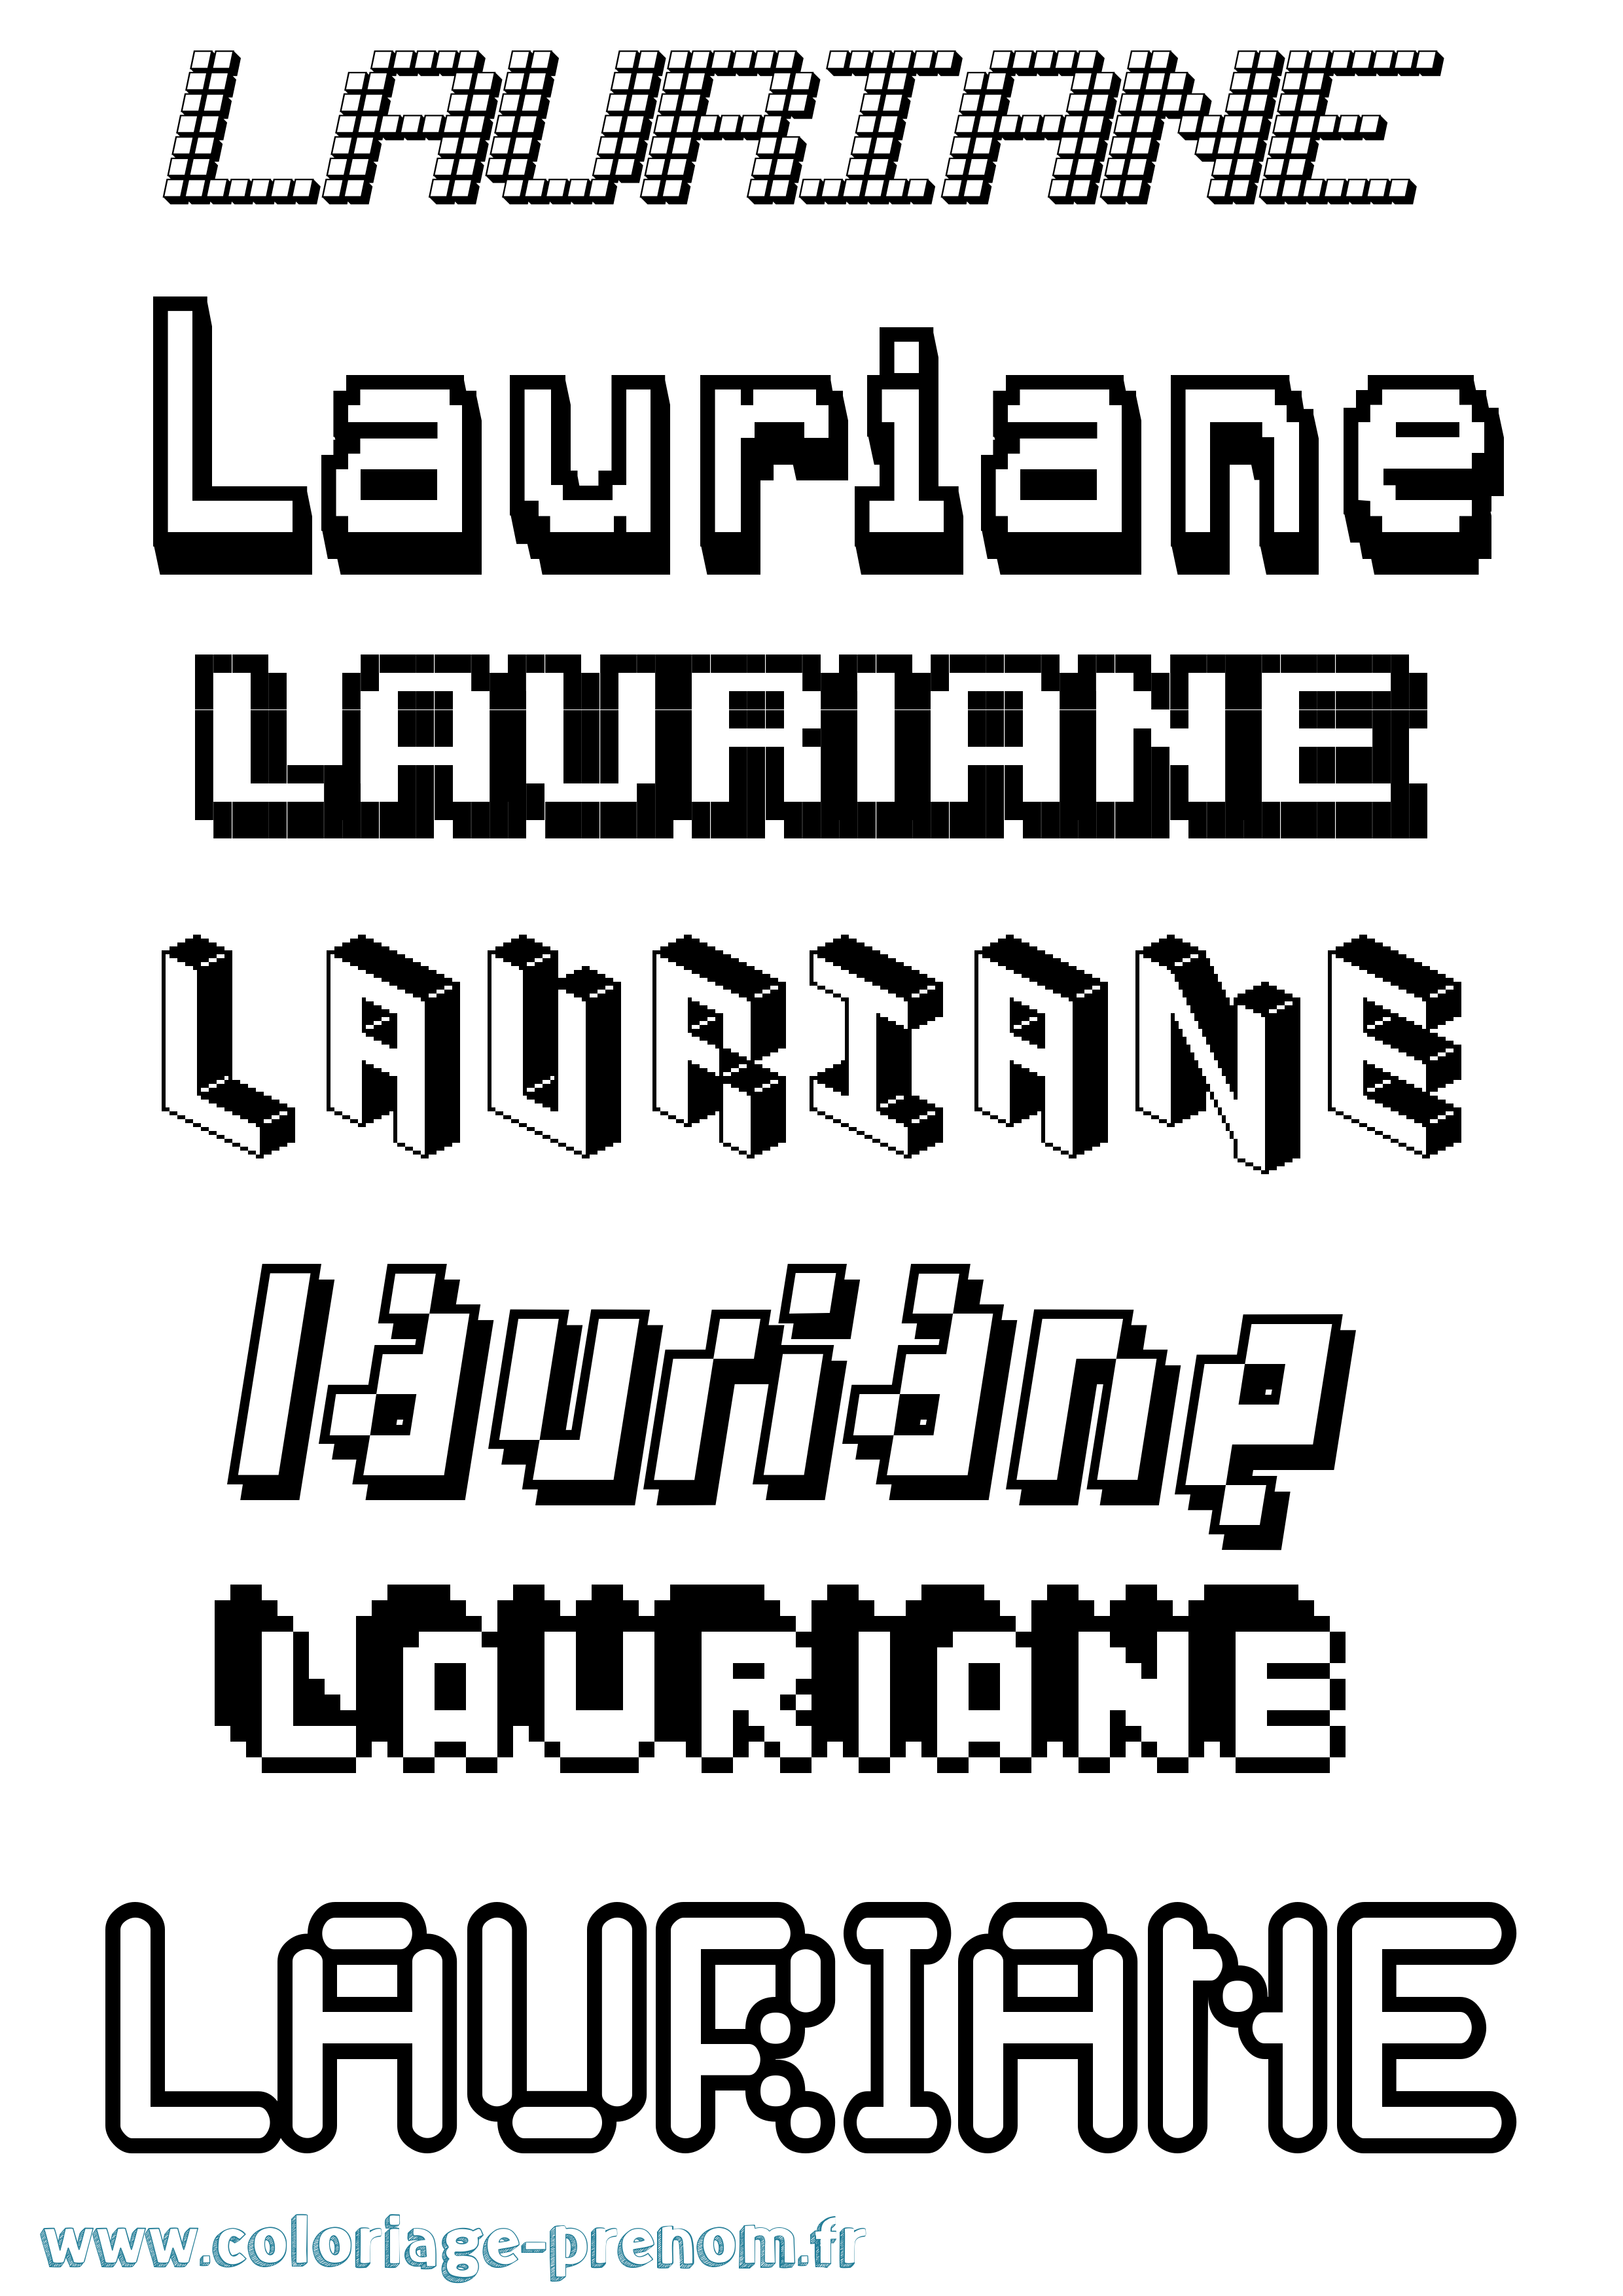 Coloriage prénom Lauriane